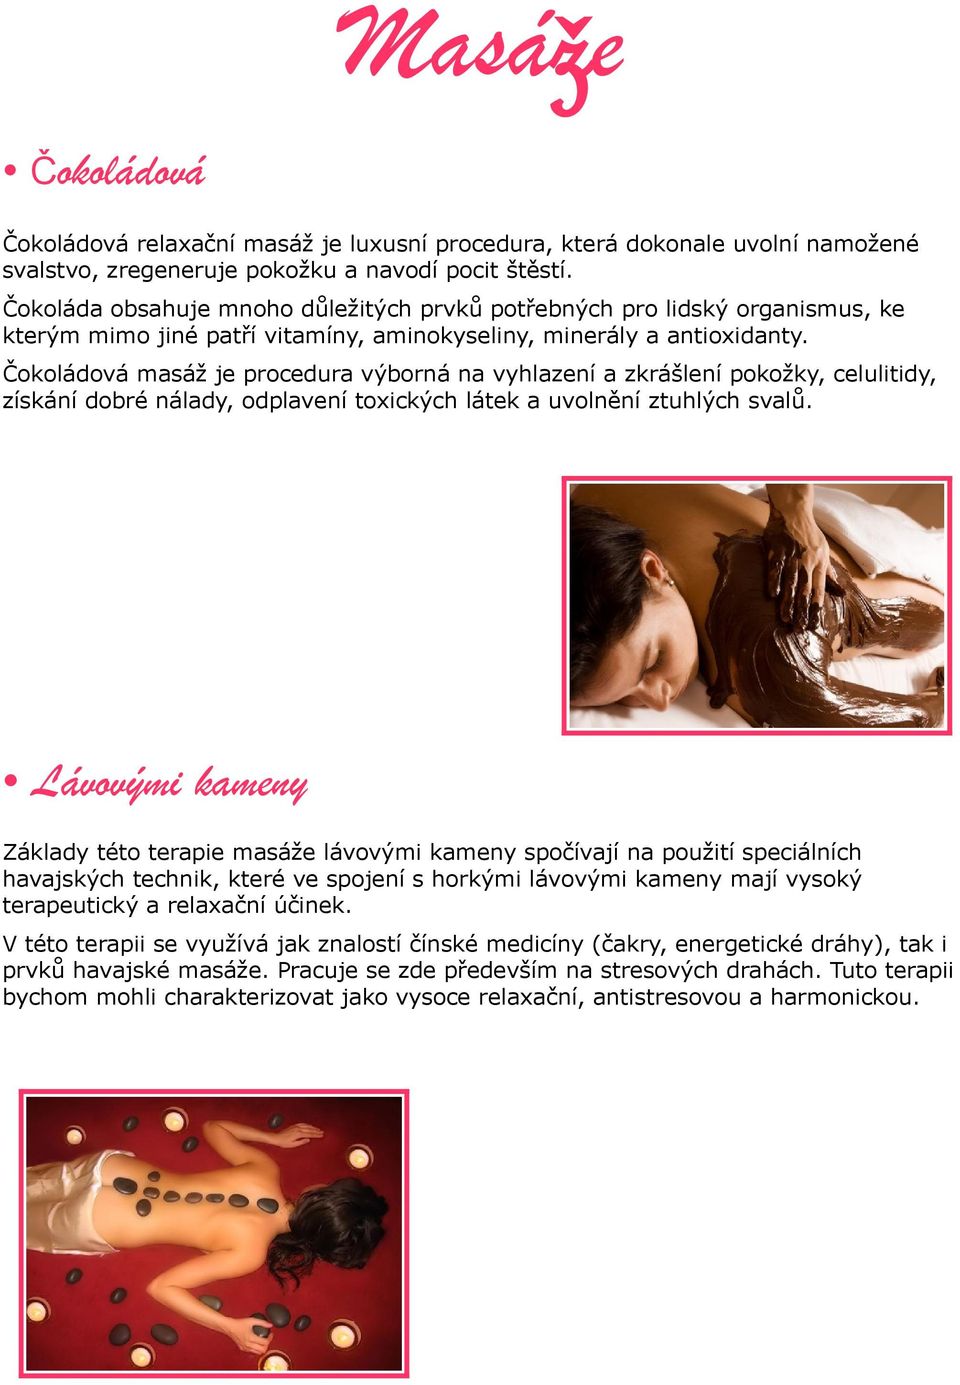 Čokoládová masáž je procedura výborná na vyhlazení a zkrášlení pokožky, celulitidy, získání dobré nálady, odplavení toxických látek a uvolnění ztuhlých svalů.